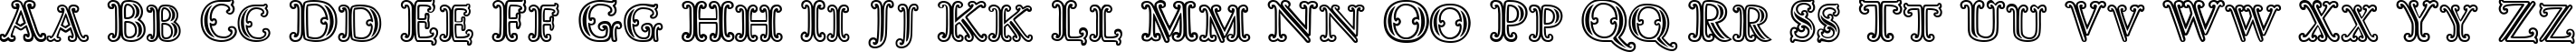 Пример написания английского алфавита шрифтом Goudy Decor InitialC